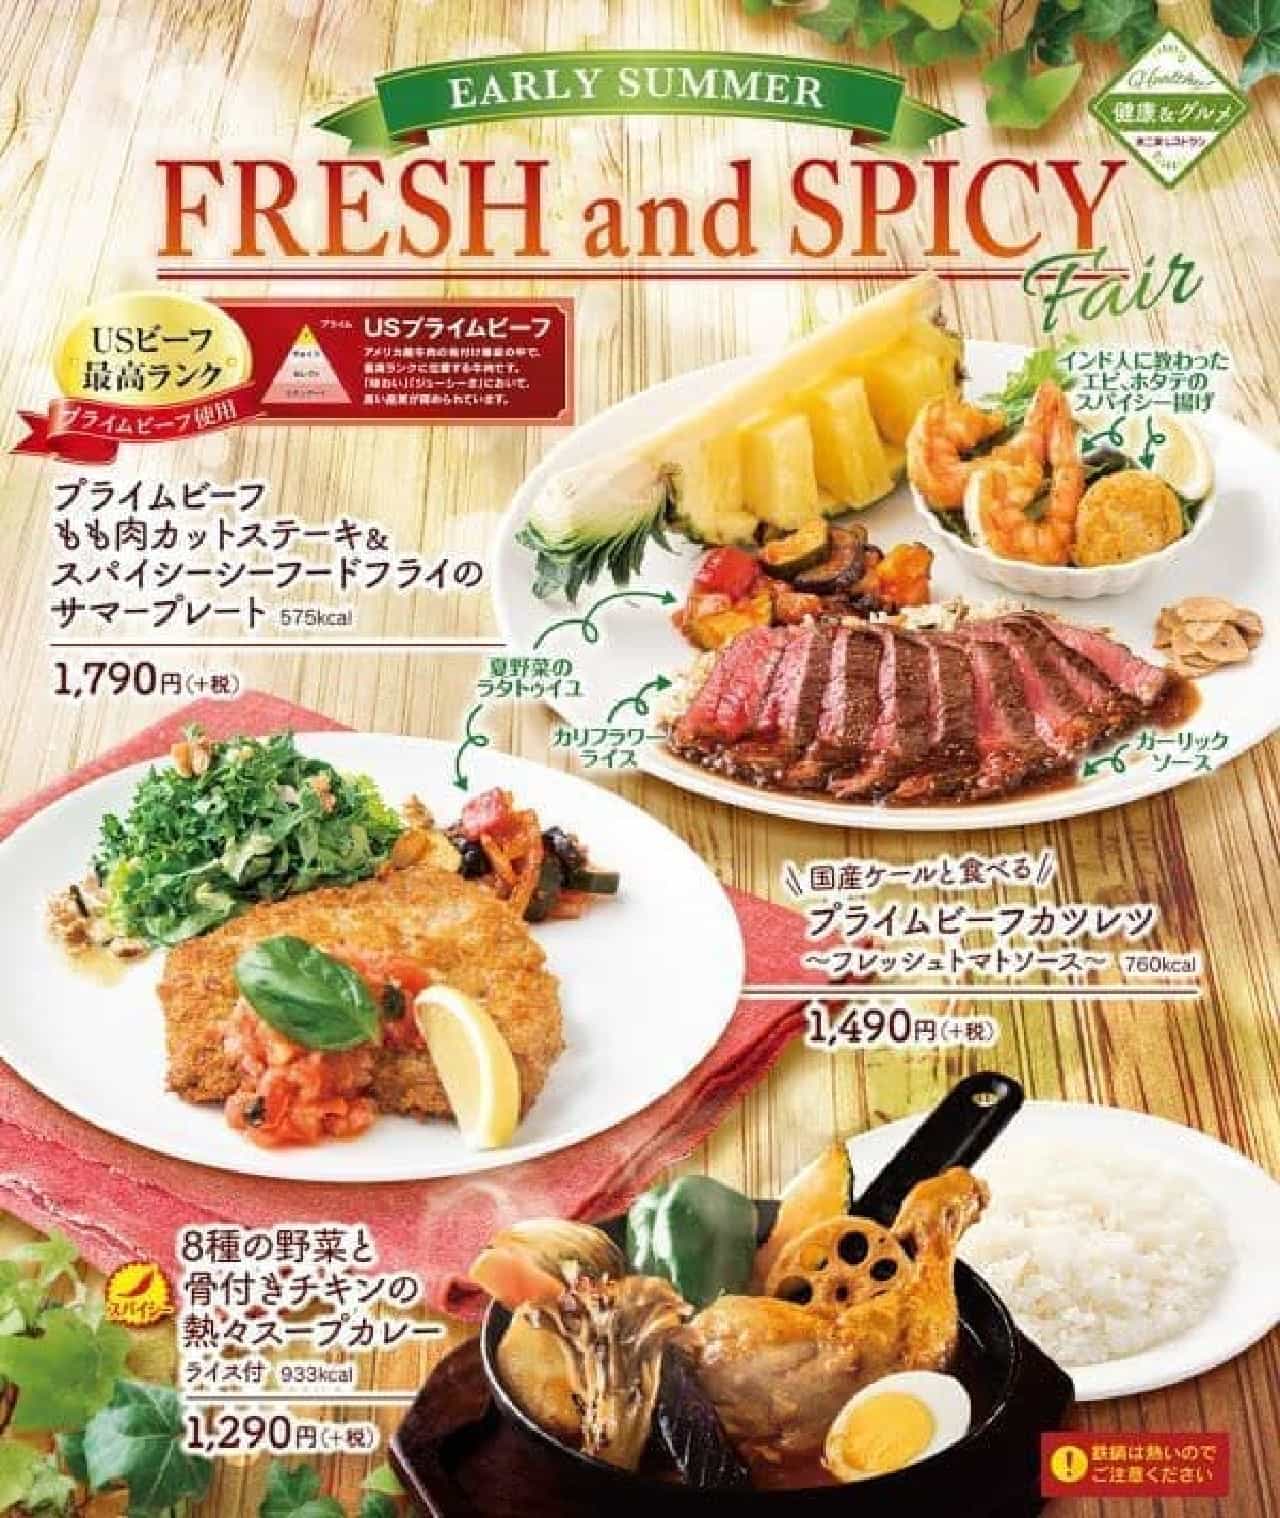 Fujiya Restaurant "Fresh and Spicy Fair"